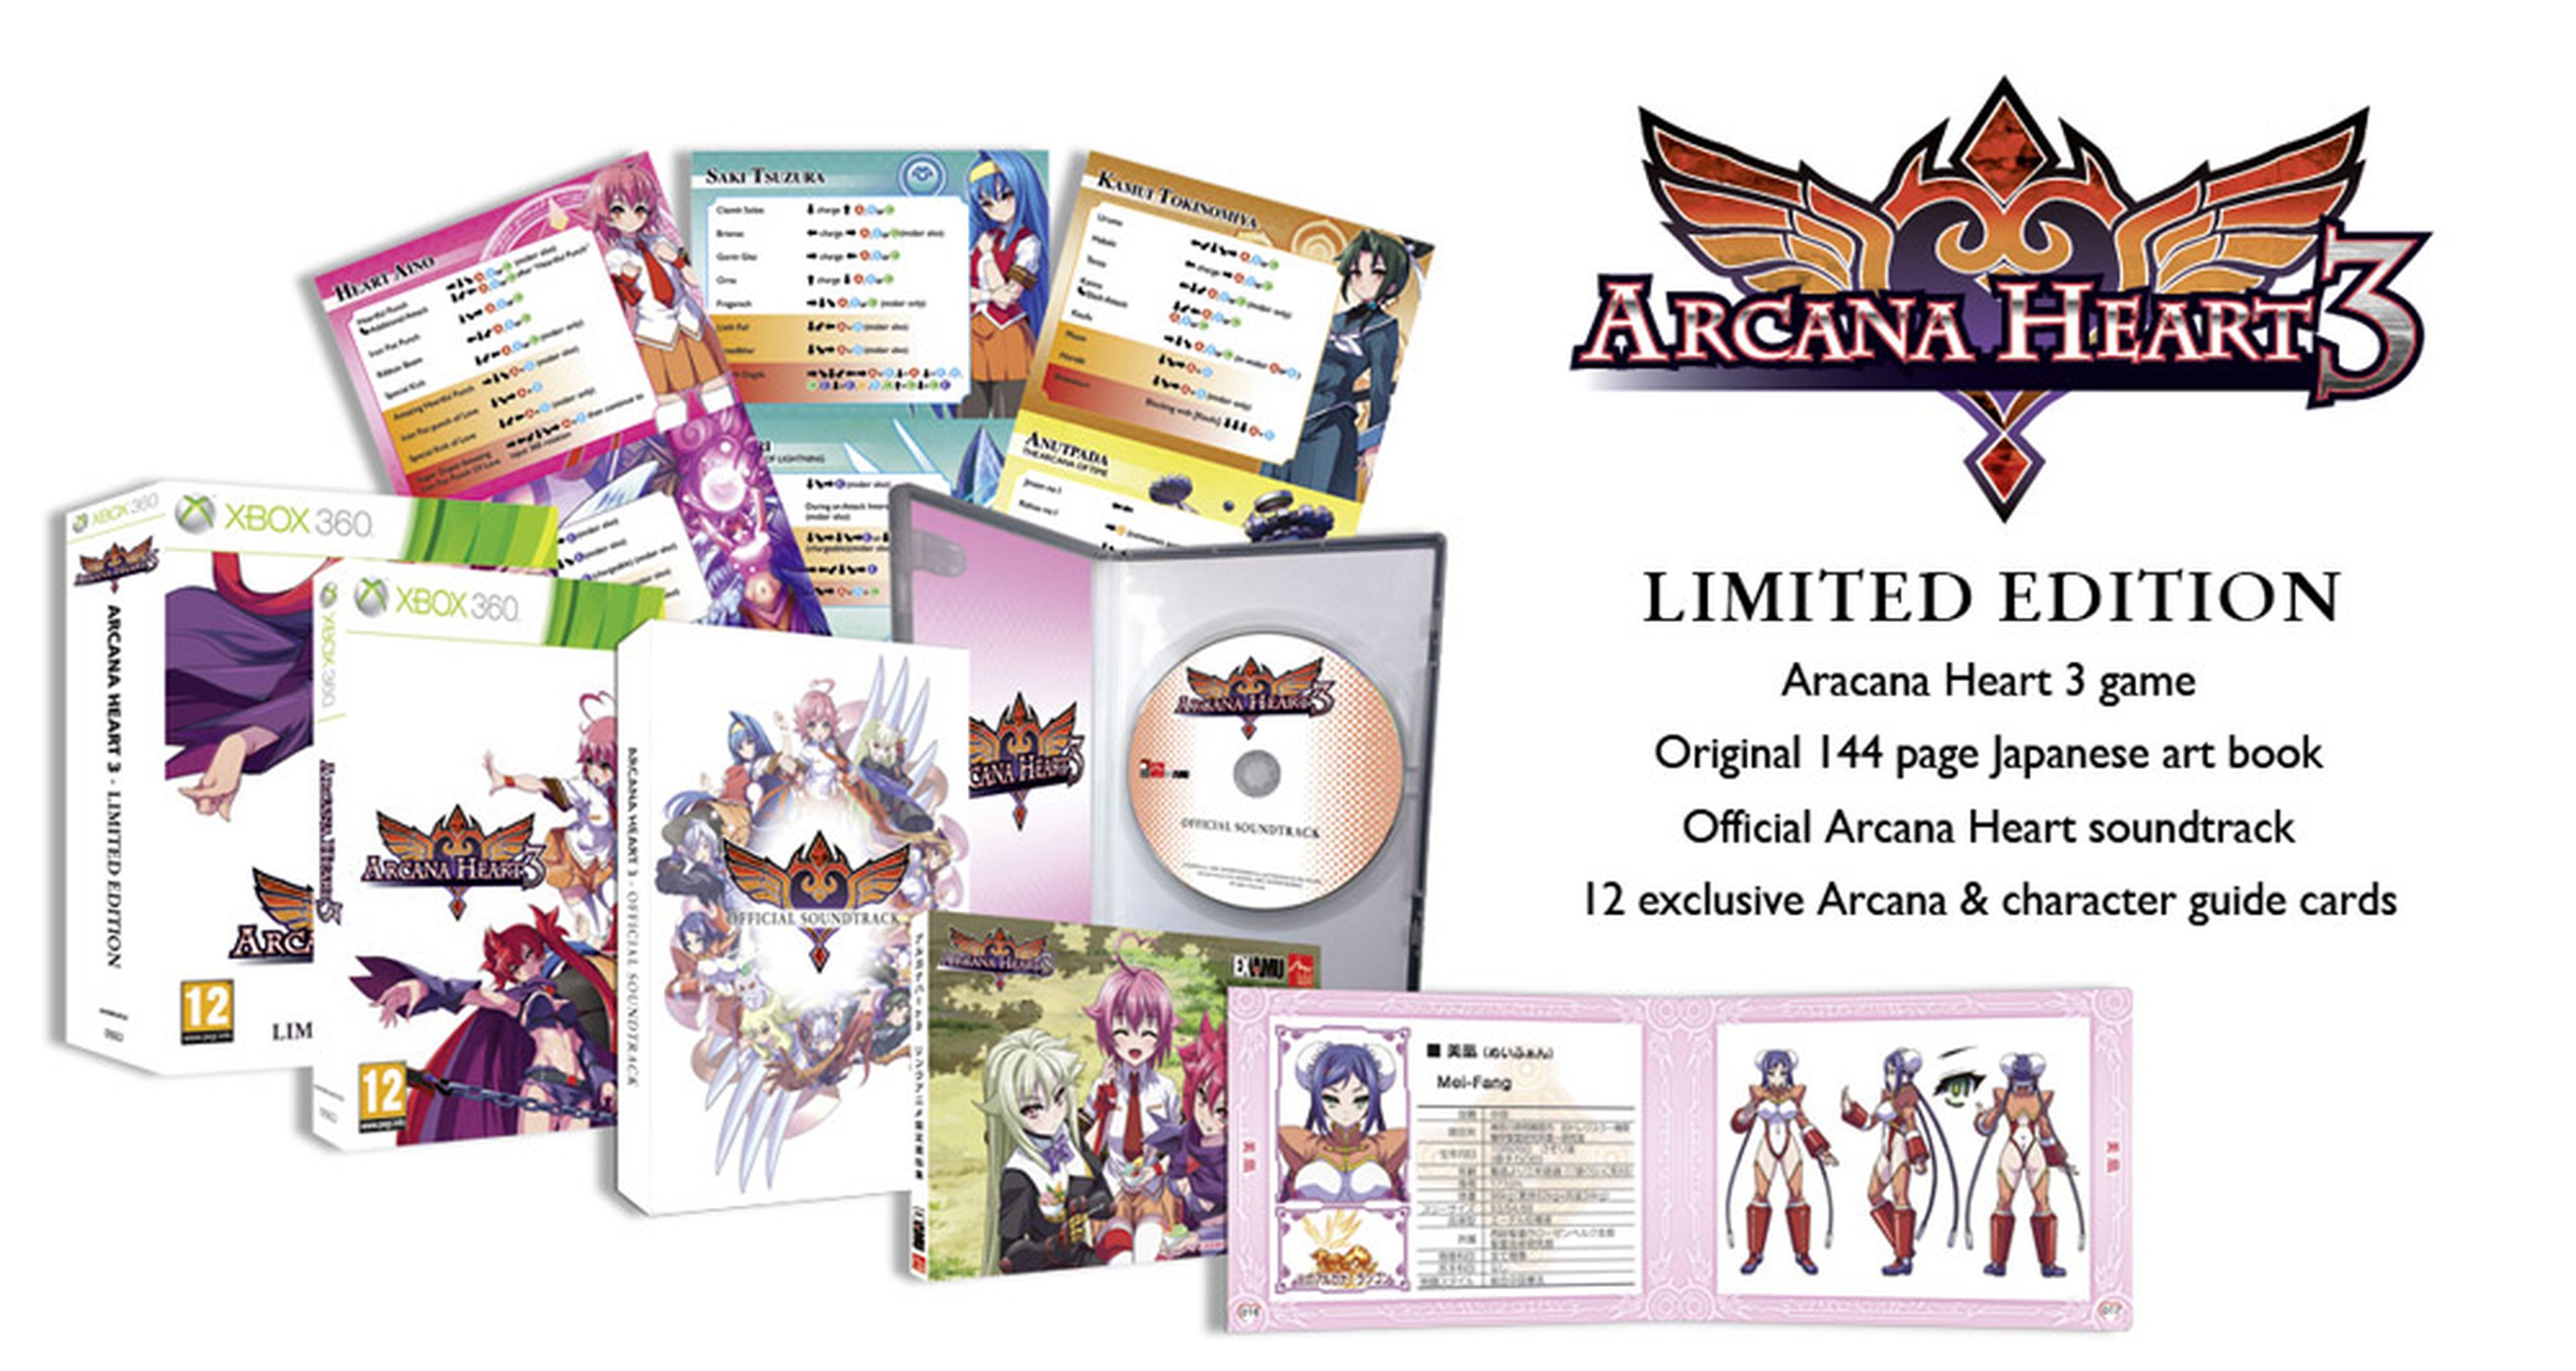 La edición limitada de Arcana Heart 3